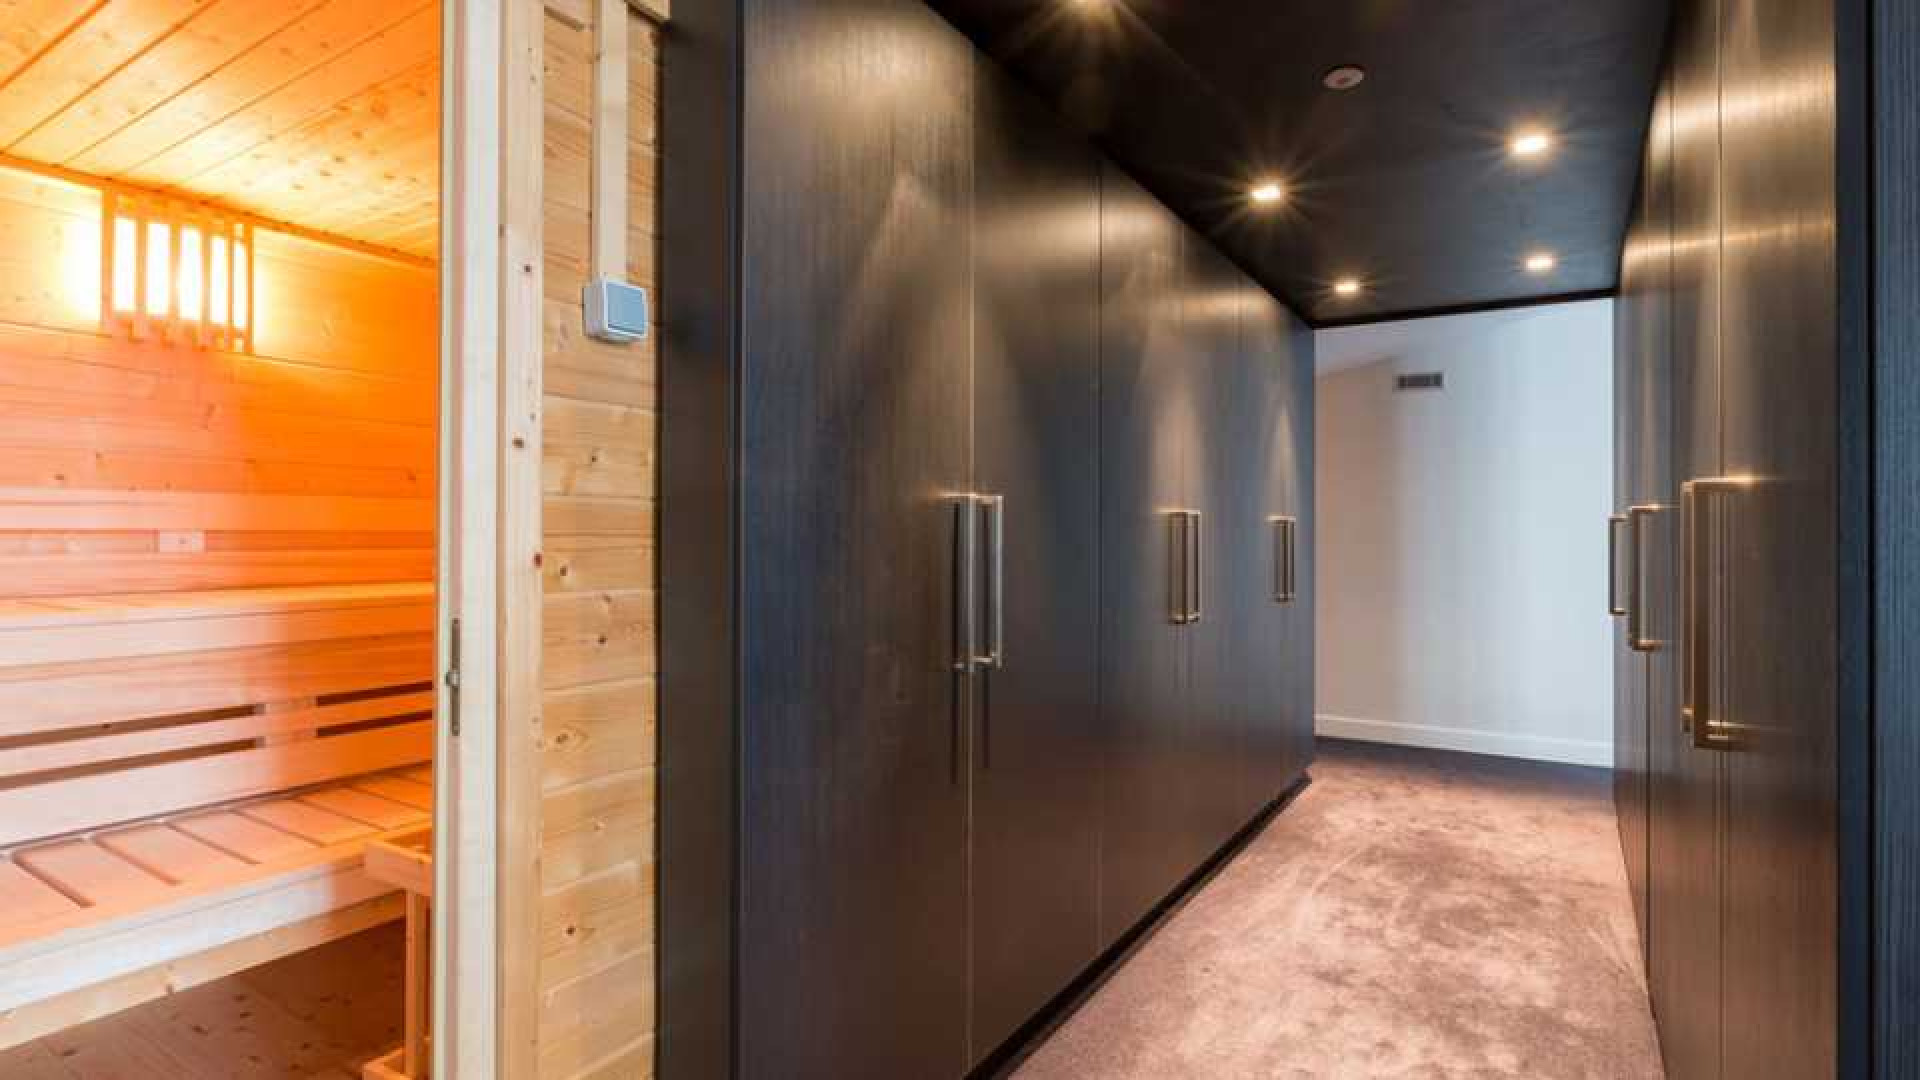 Amanda Krabbe en haar man Harrie Kolen zetten hun luxe penthouse in stille verkoop. Zie foto's 23